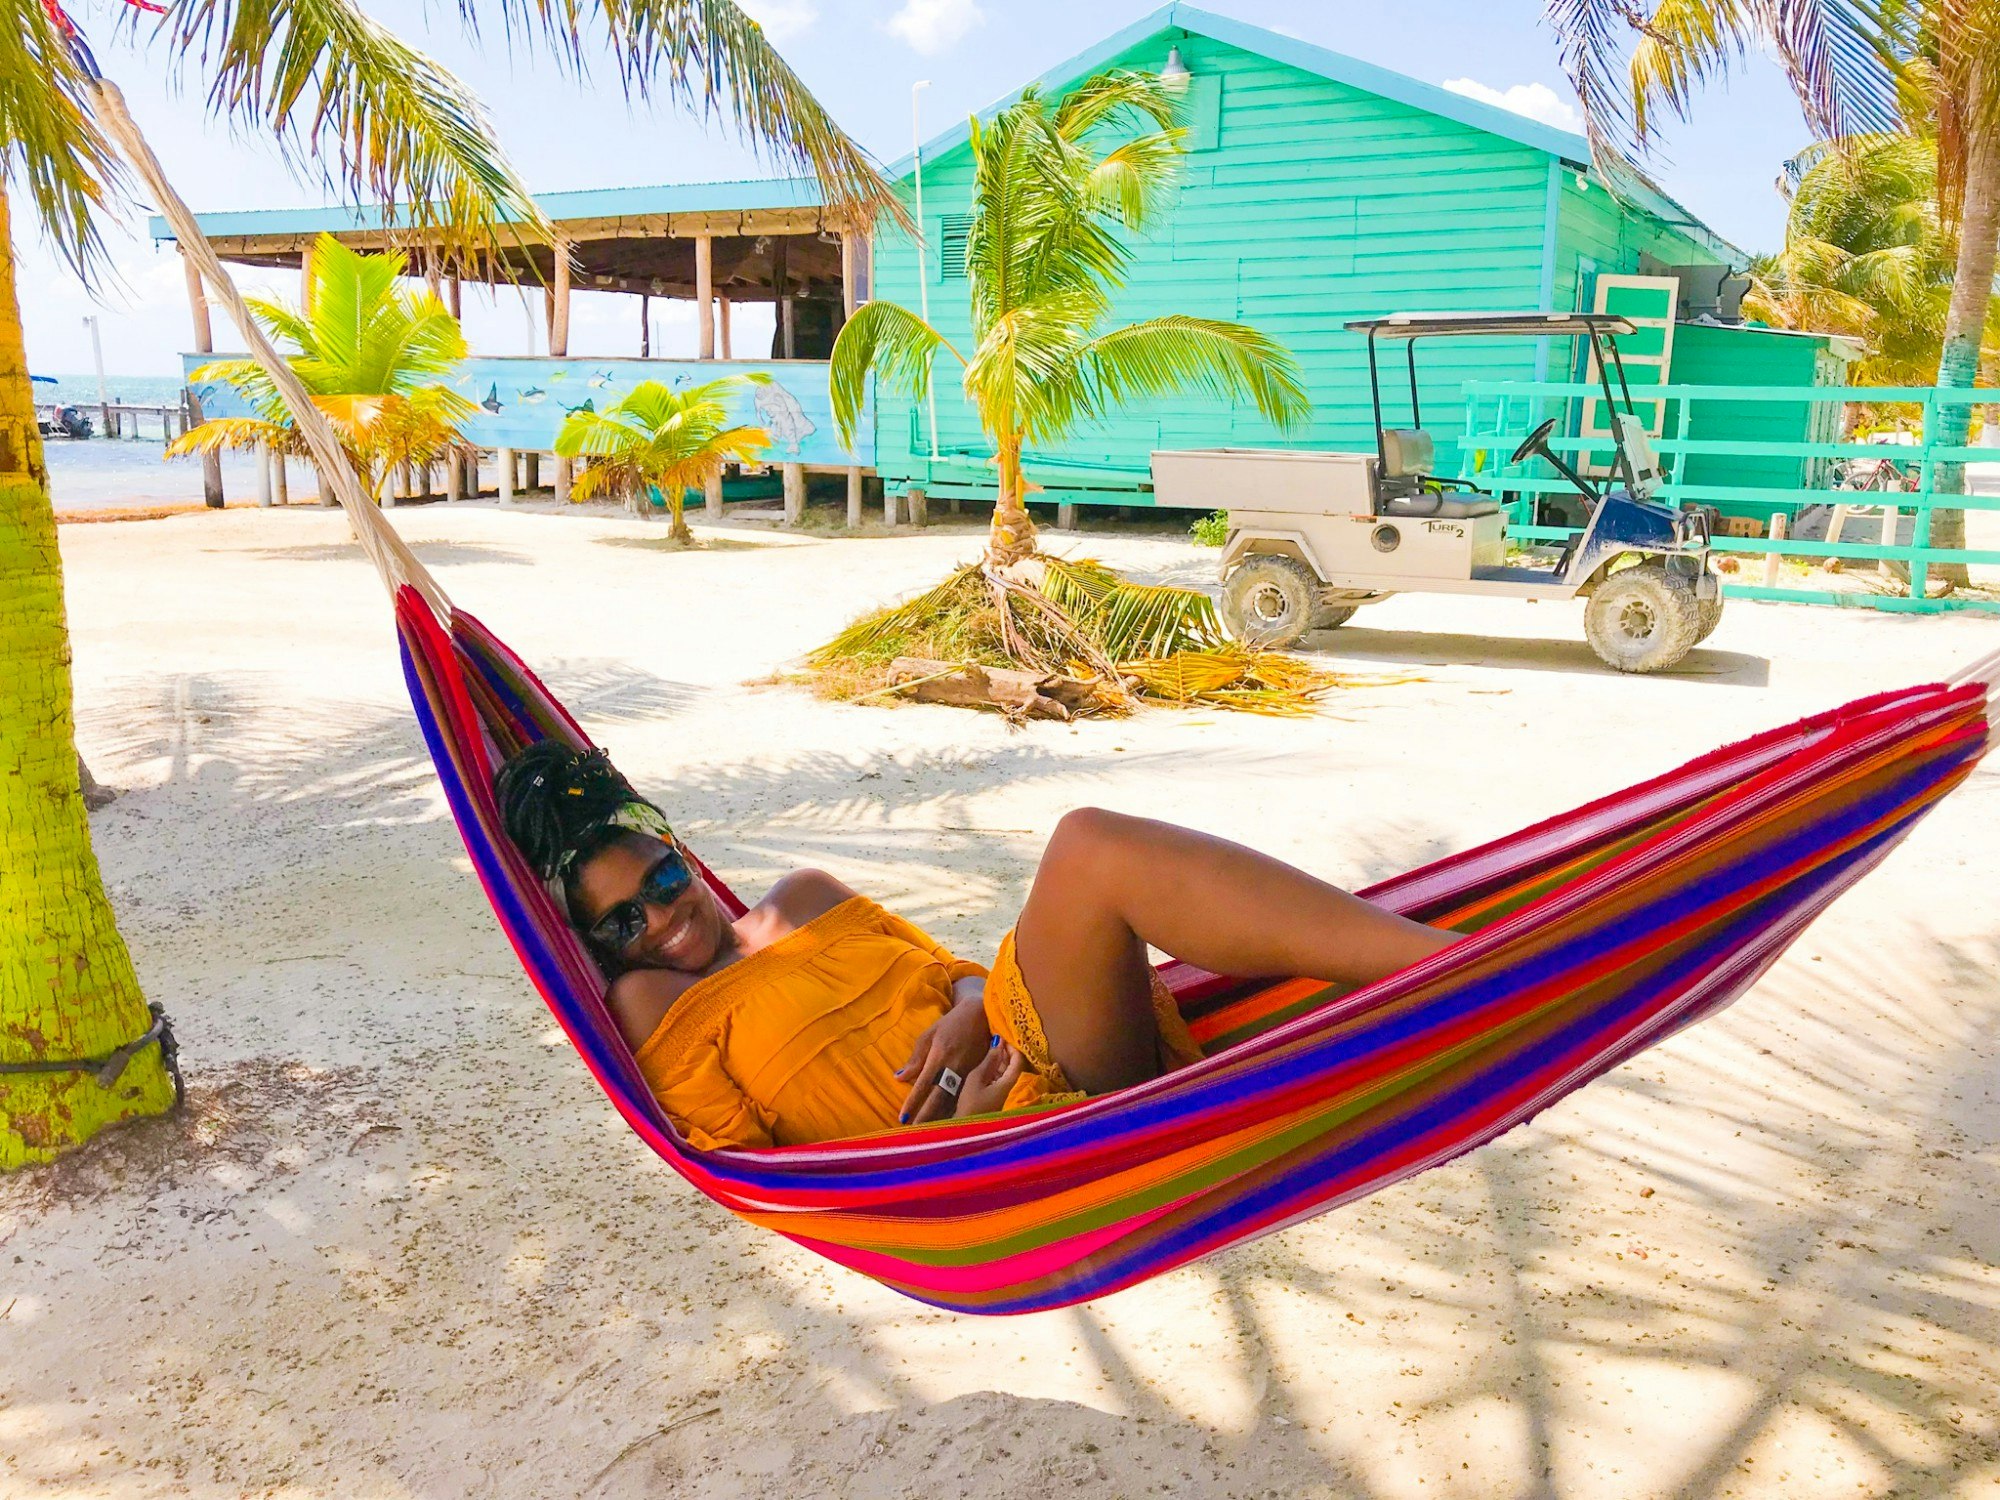 Rachel relaxes in a multi-coloured hammock on a white sandy beach